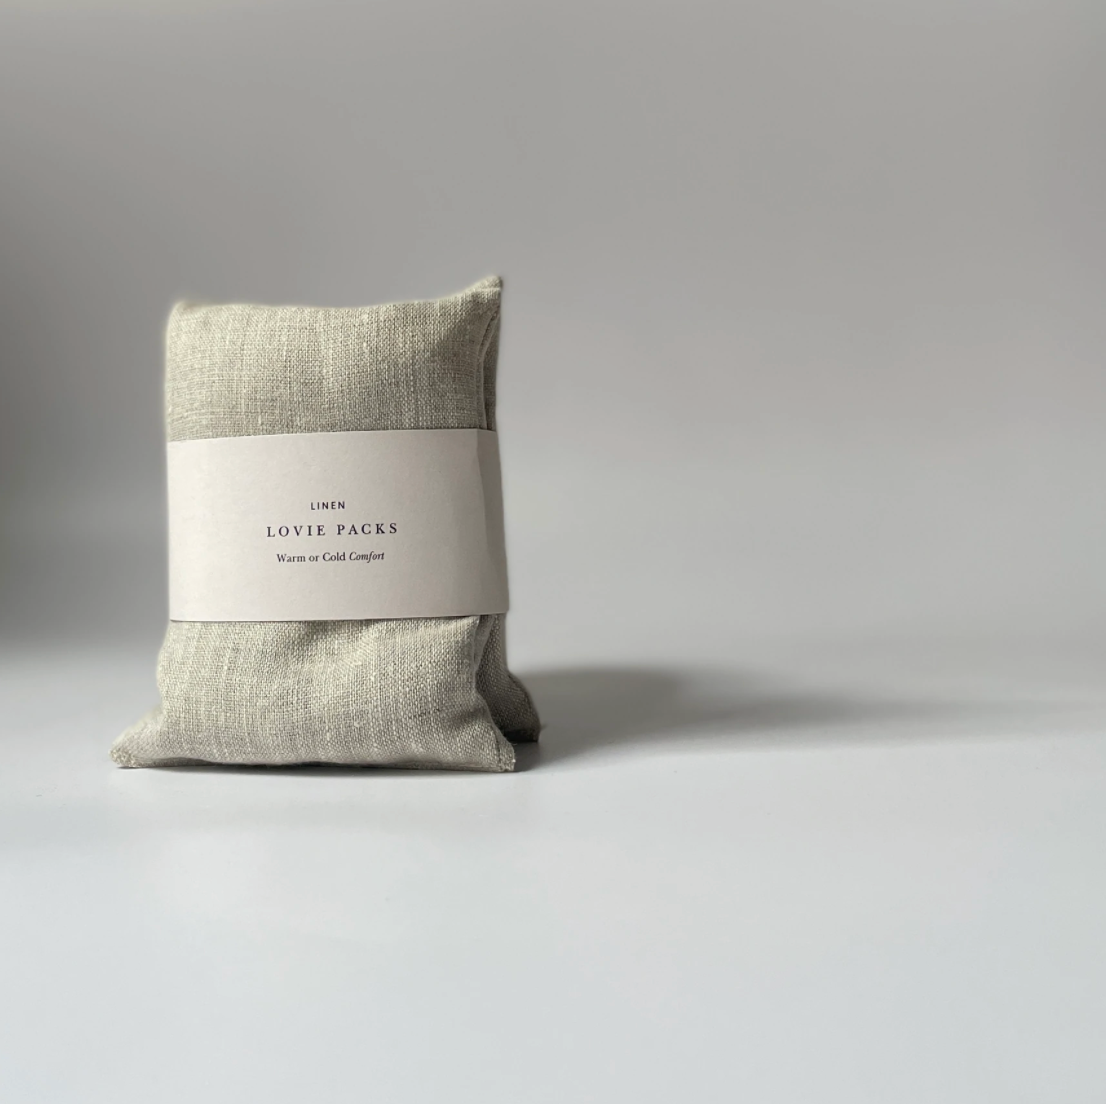 a natural linen stress relief pillow